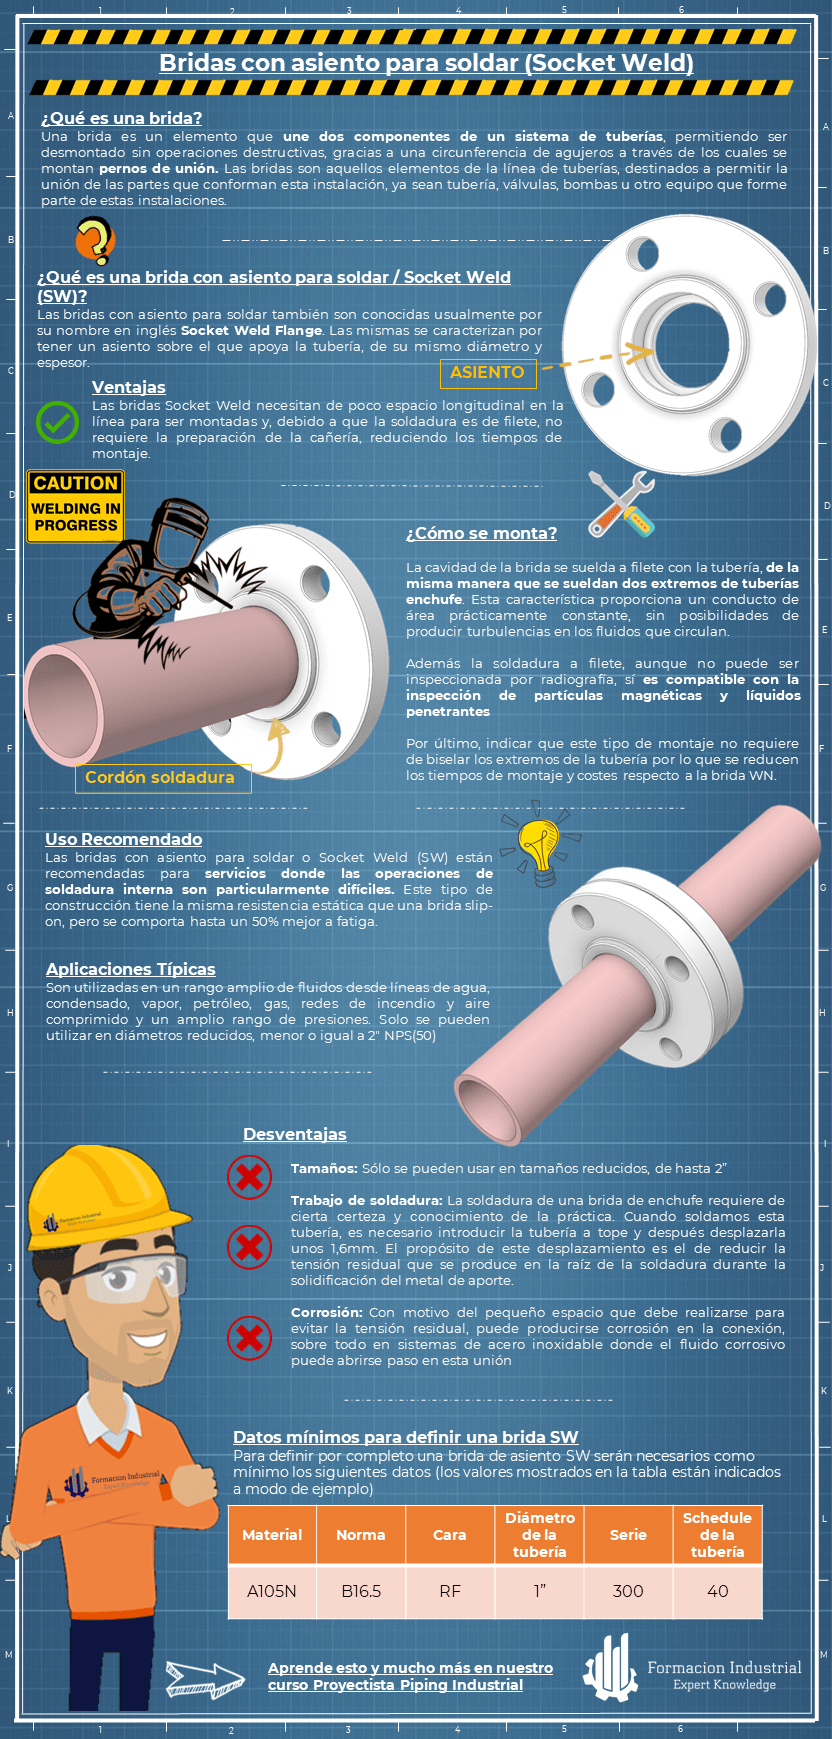 Infografía explicativa sobre Las Bridas Socket Weld y su uso en sistemas de tuberías